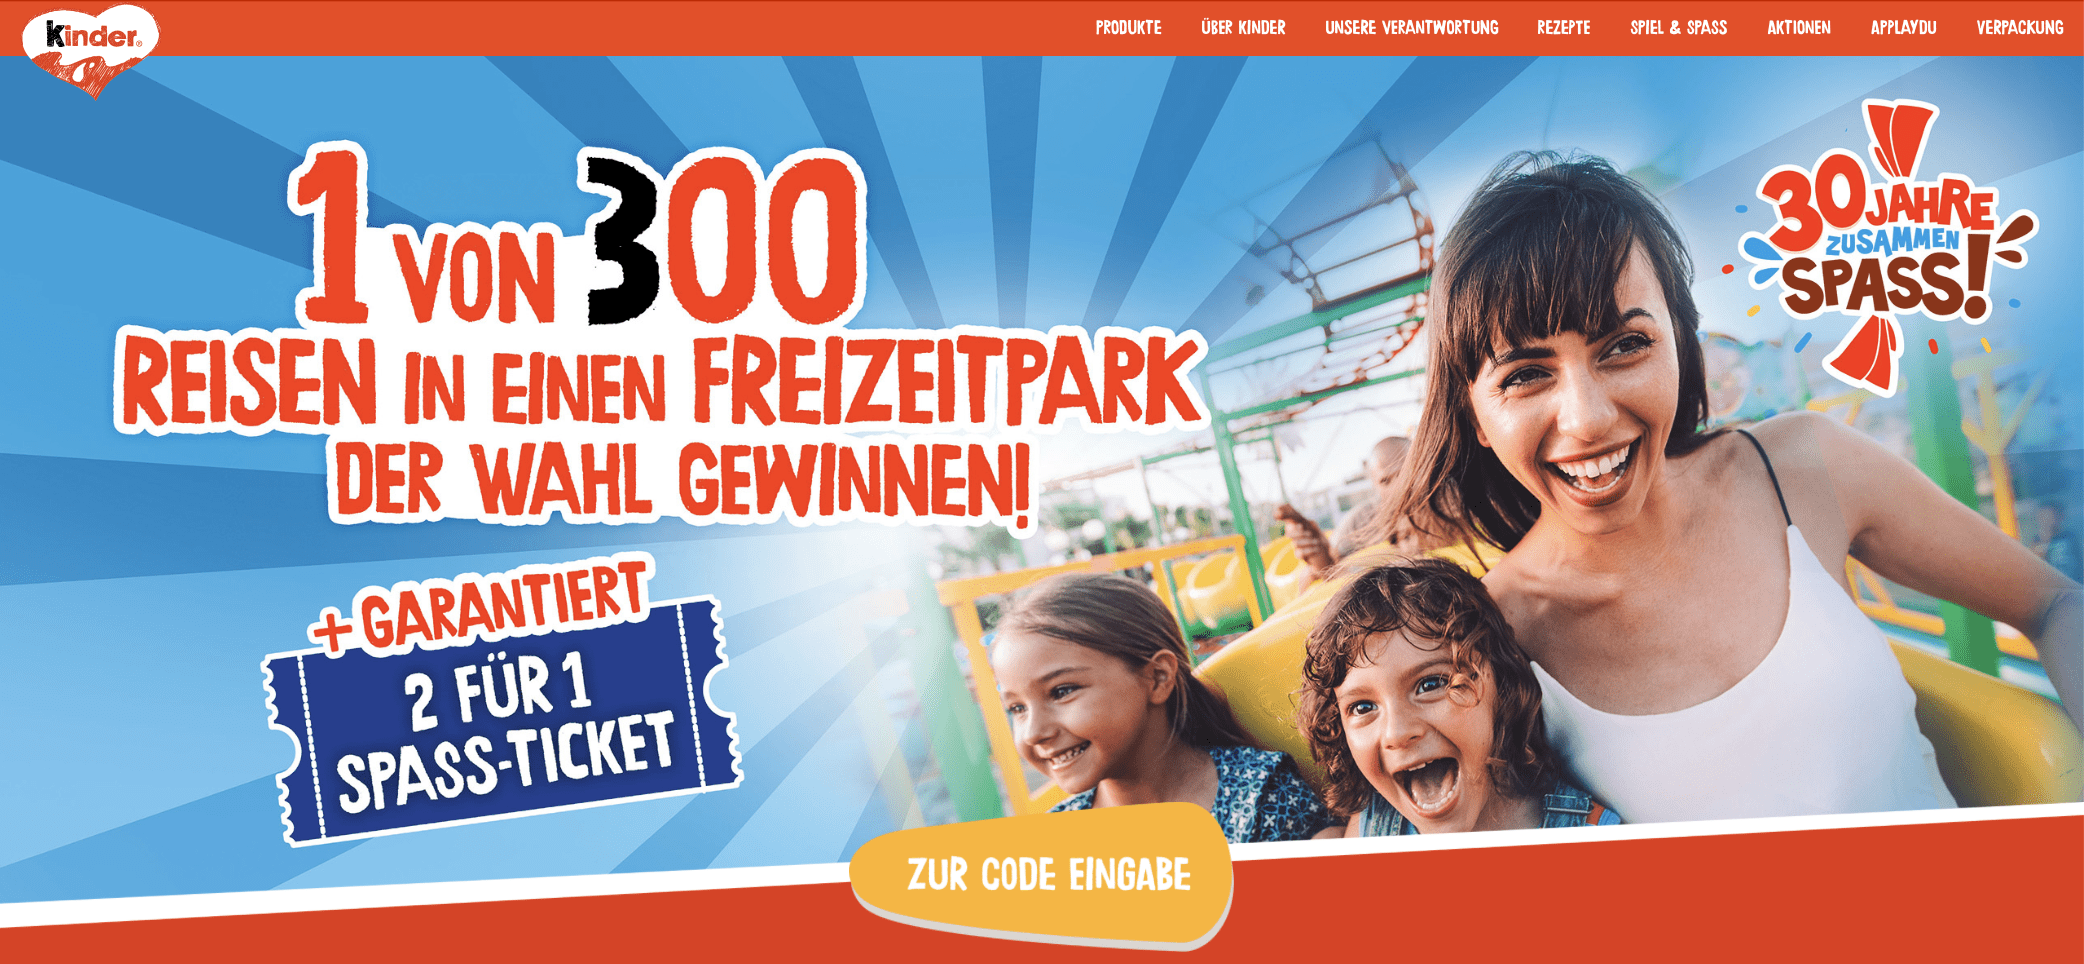 case_Kinder Schoko-Bons_freizeitpark-gewinnspiel